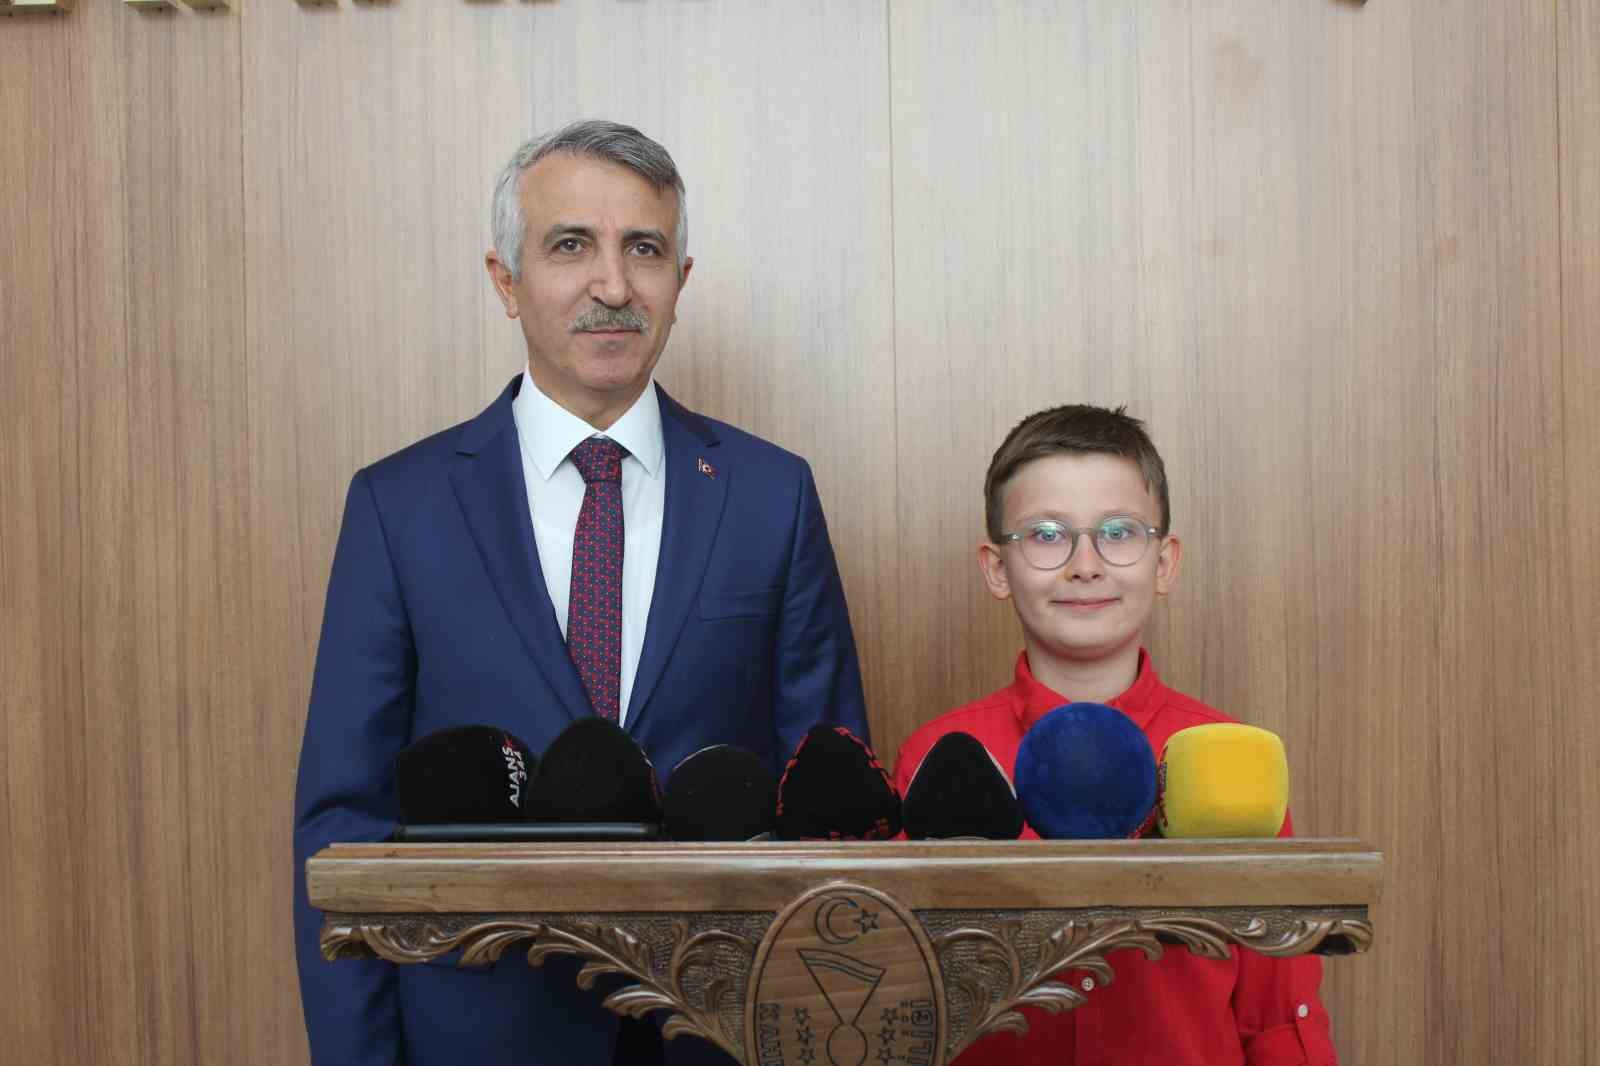 Kahramanmaraş’ın minik valisi Samray: "Ukrayna ve Filistin’de çocuklar bayramı kutlayamıyor"
